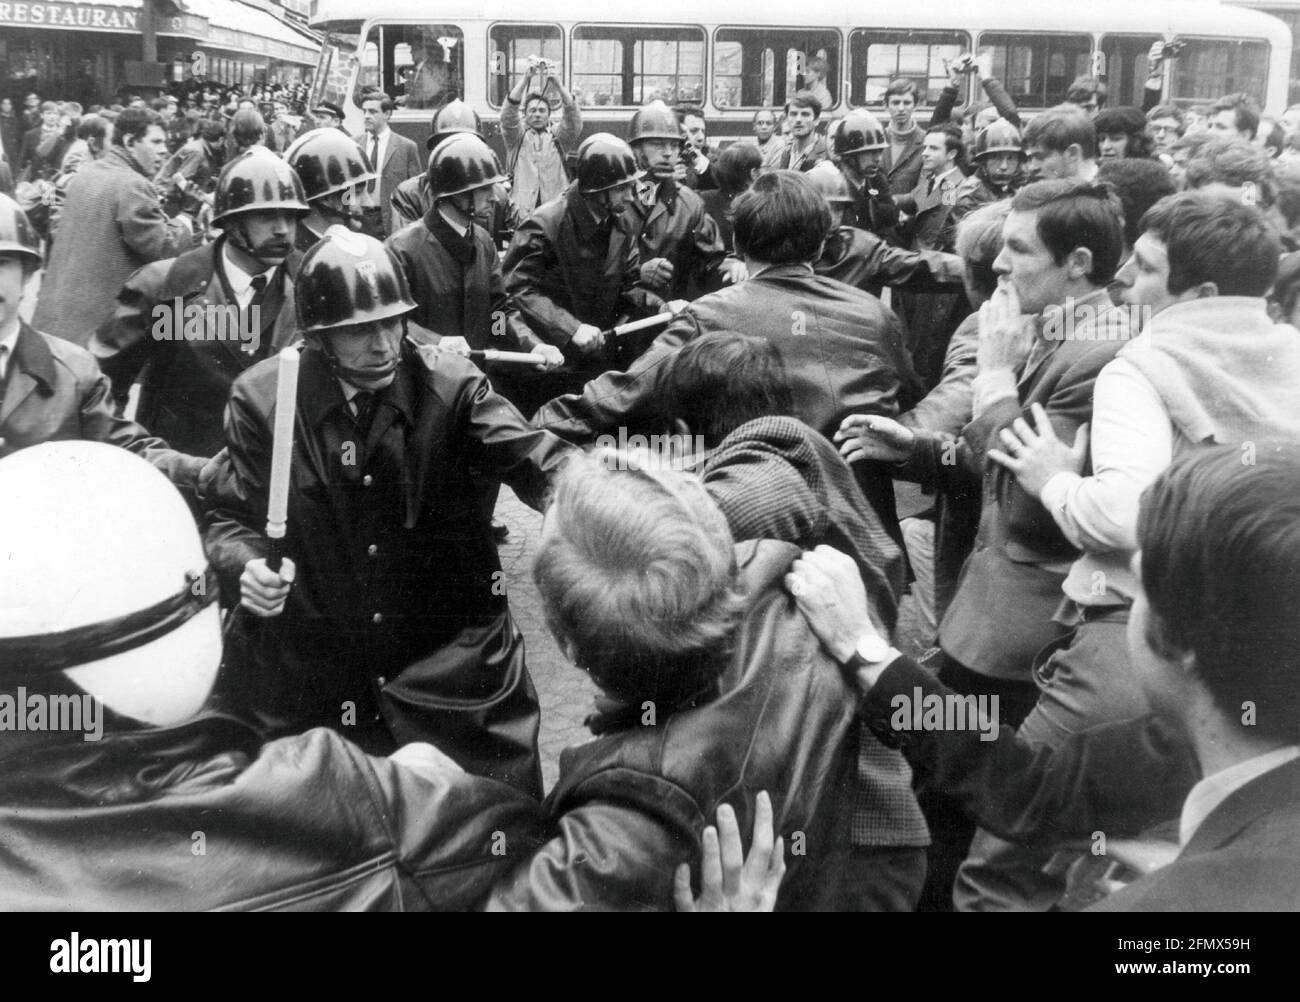 Demonstrationen, Frankreich, Paris, 1968, Studentenaufstände im Quartier Latin, ZUSÄTZLICHE-RIGHTS-CLEARANCE-INFO-NOT-AVAILABLE Stockfoto